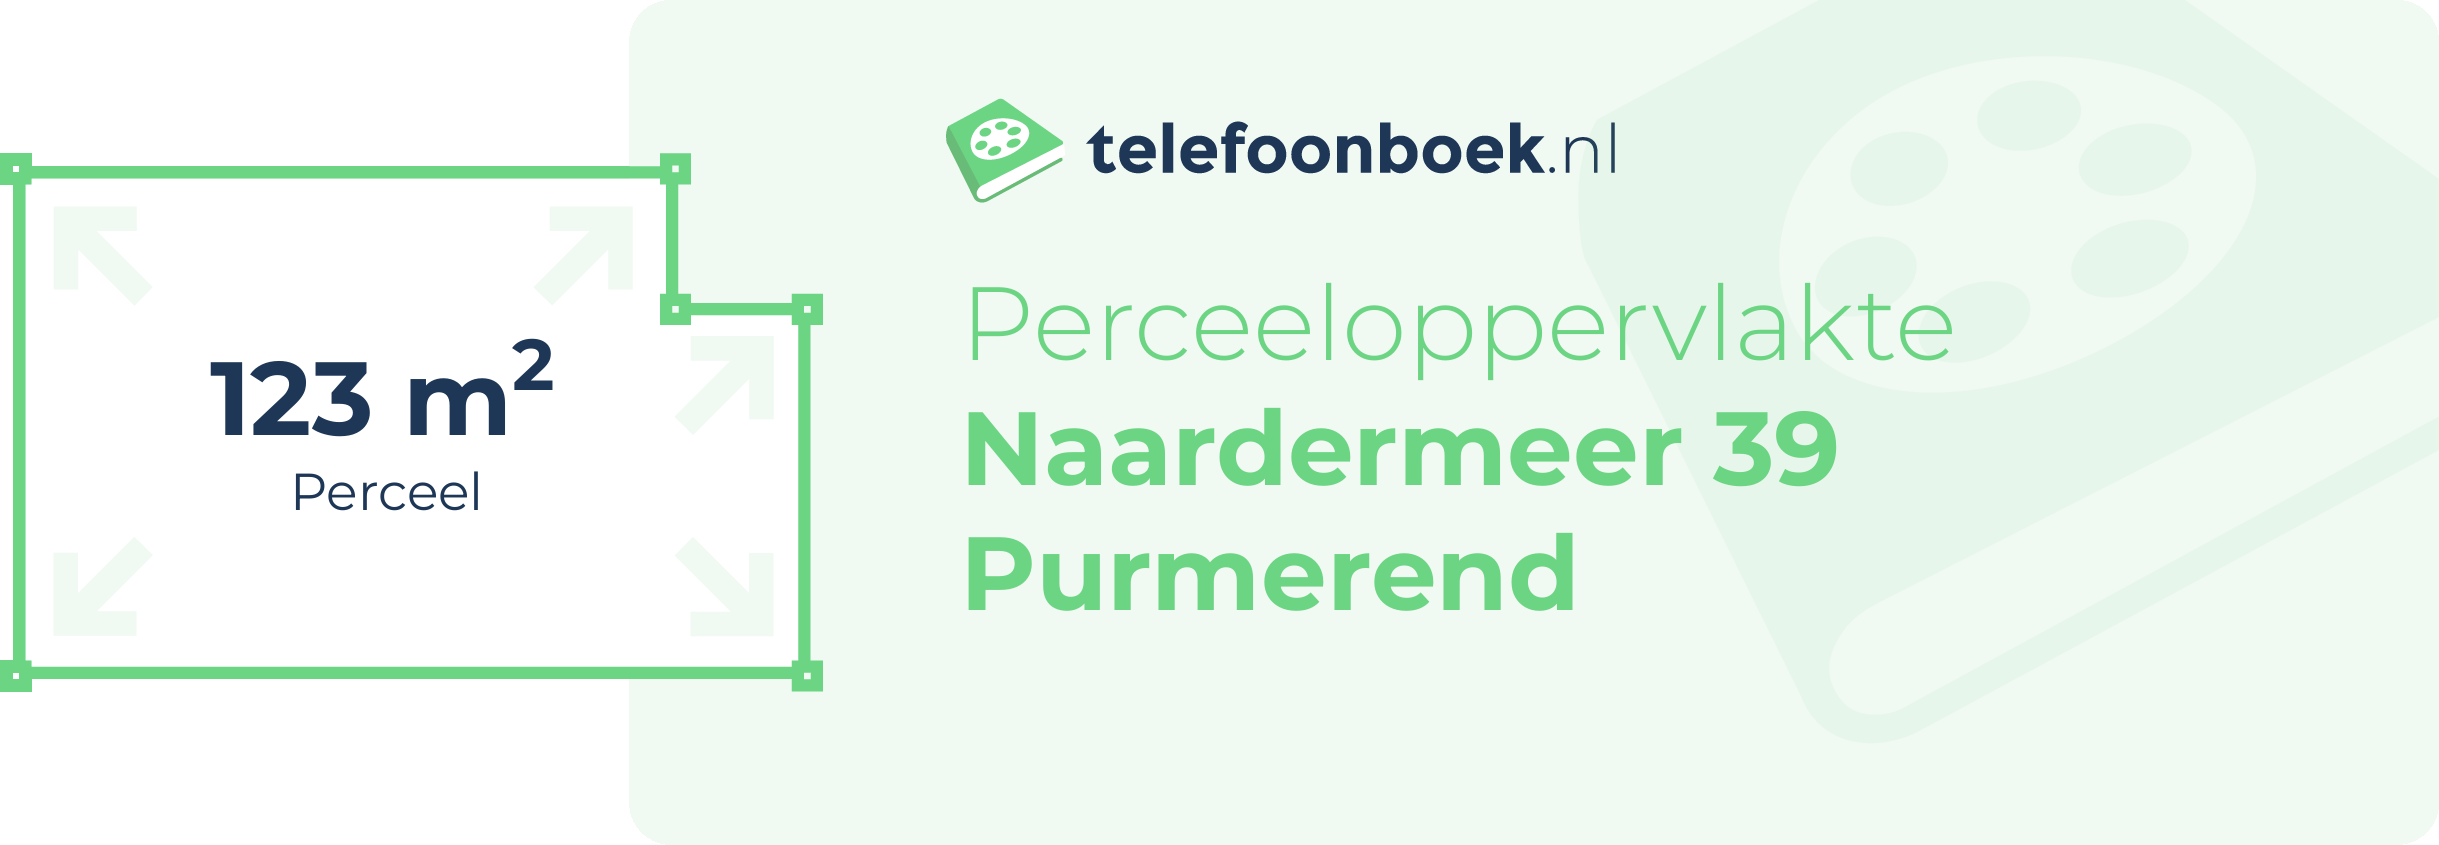 Perceeloppervlakte Naardermeer 39 Purmerend